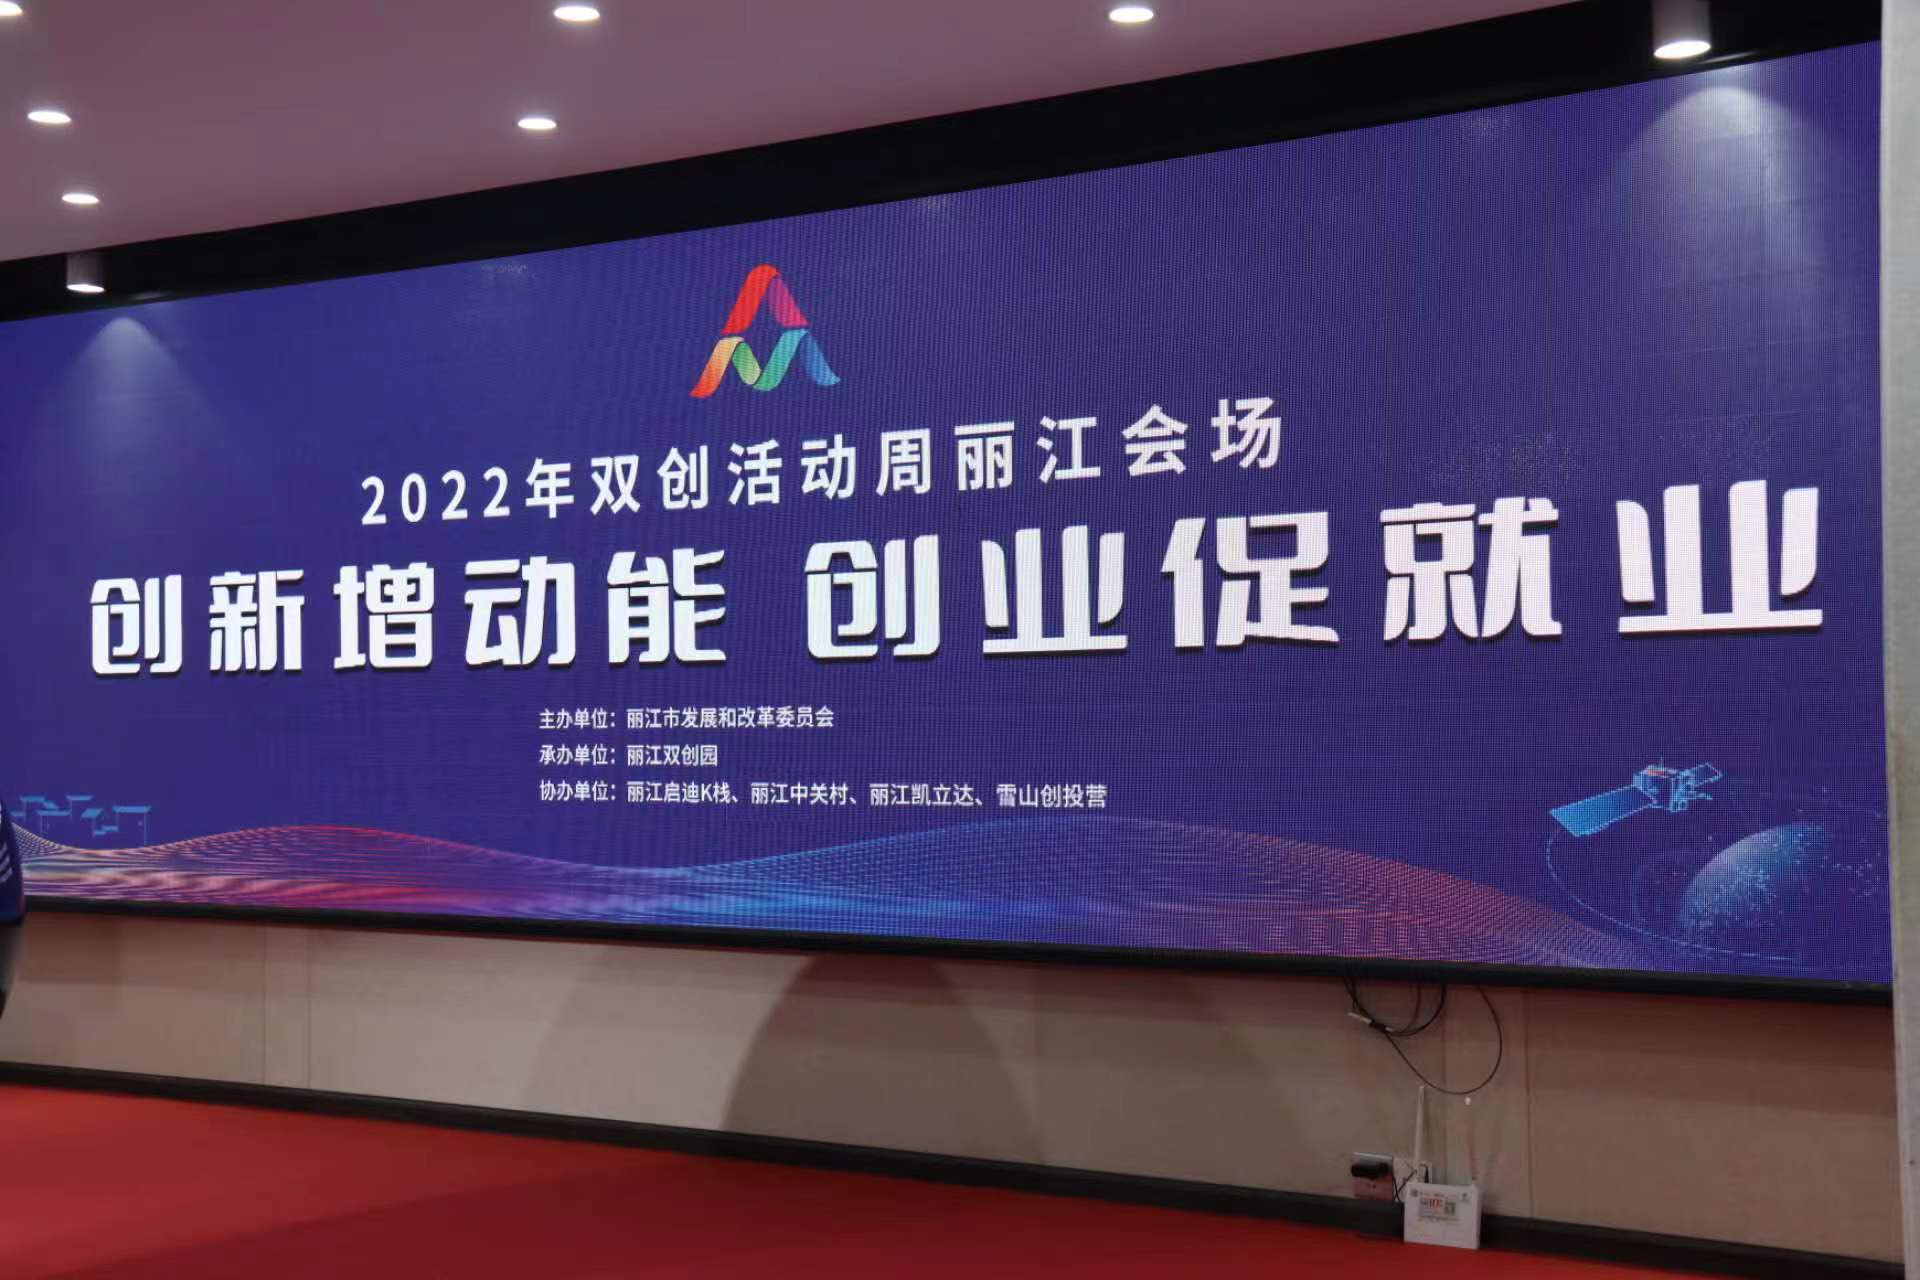 创新增动能 创业促就业 2022年双创活动周丽江会场举行启动仪式